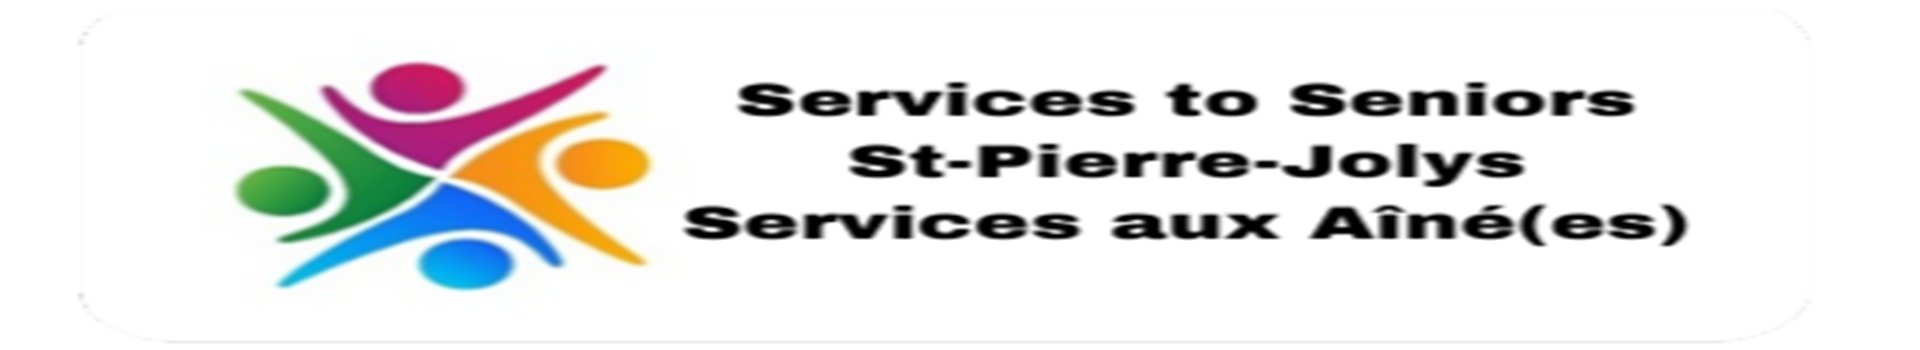 Services aux aînés - Services to Seniors - Home Care 